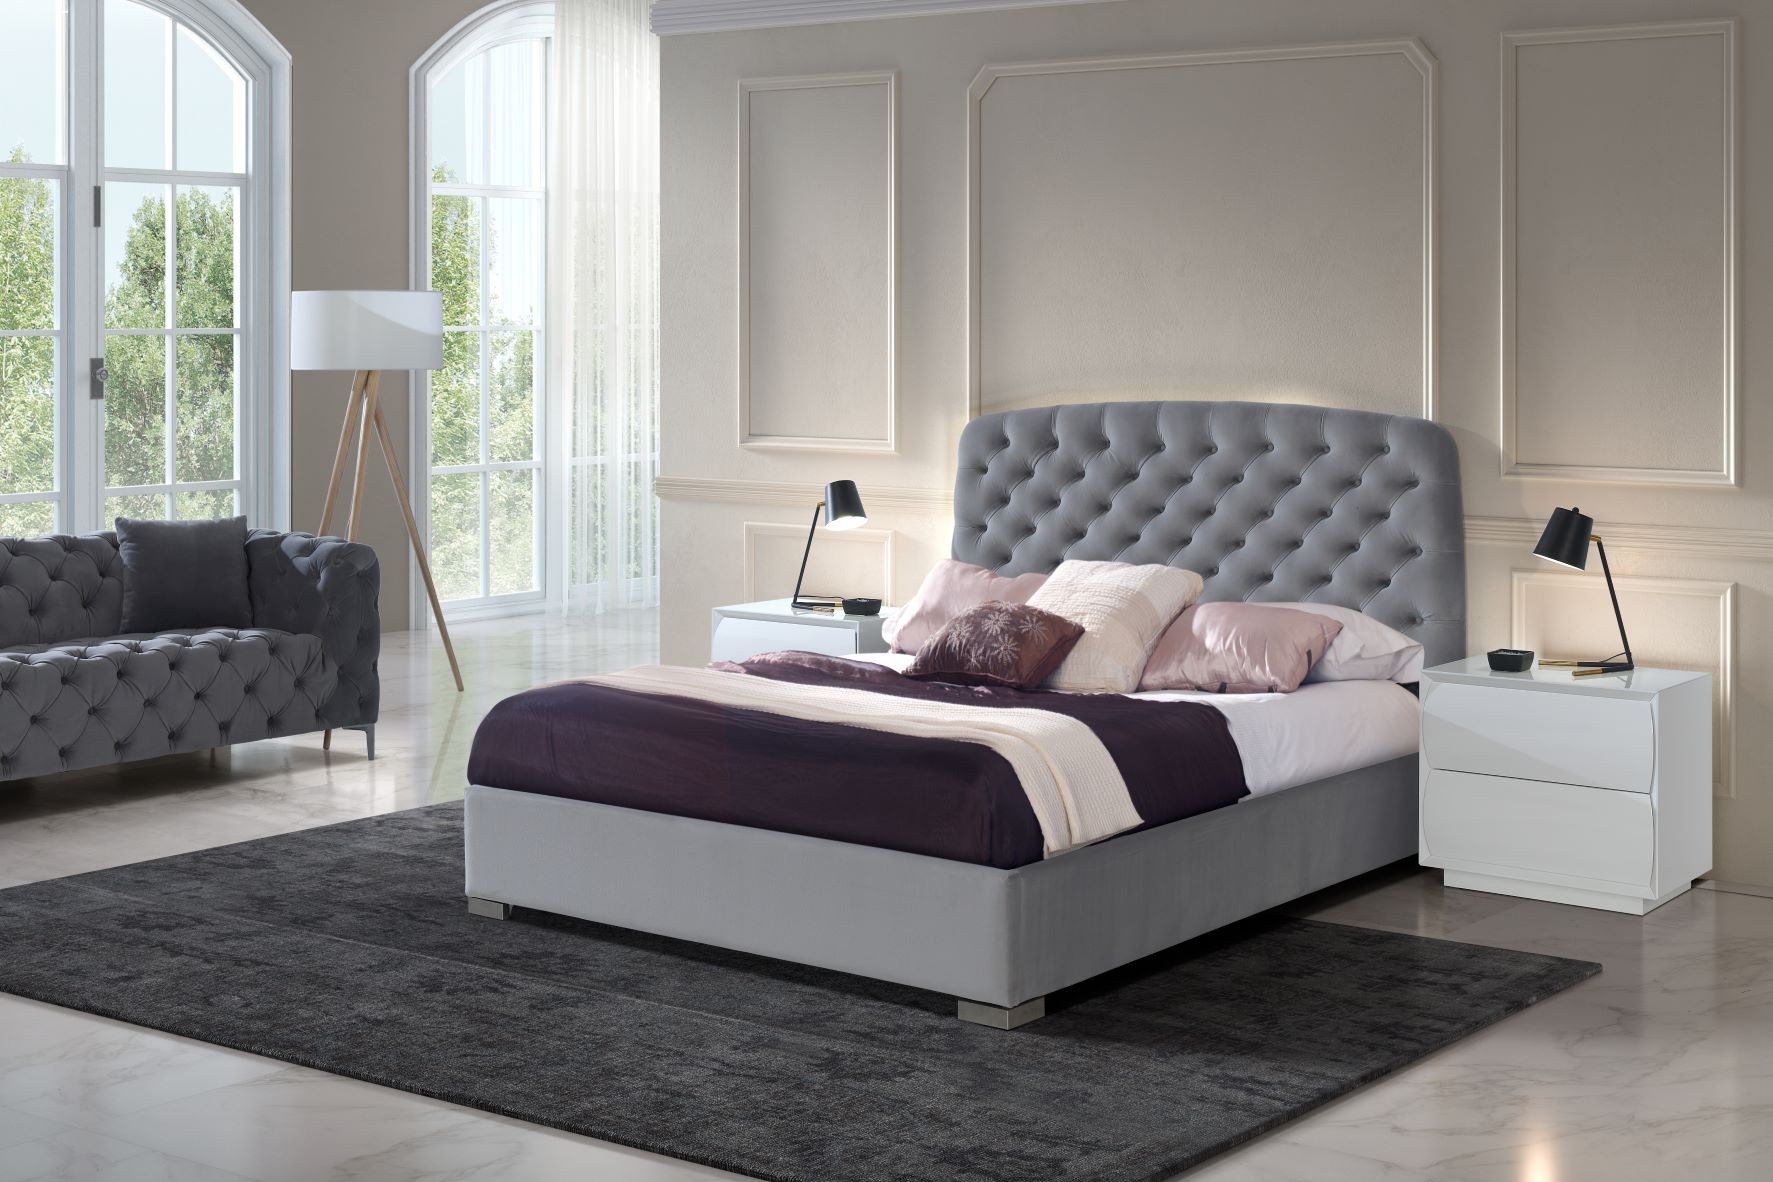 Estila Chesterfield čalouněná moderní postel Yolanda s úložným prostorem 140-180cm